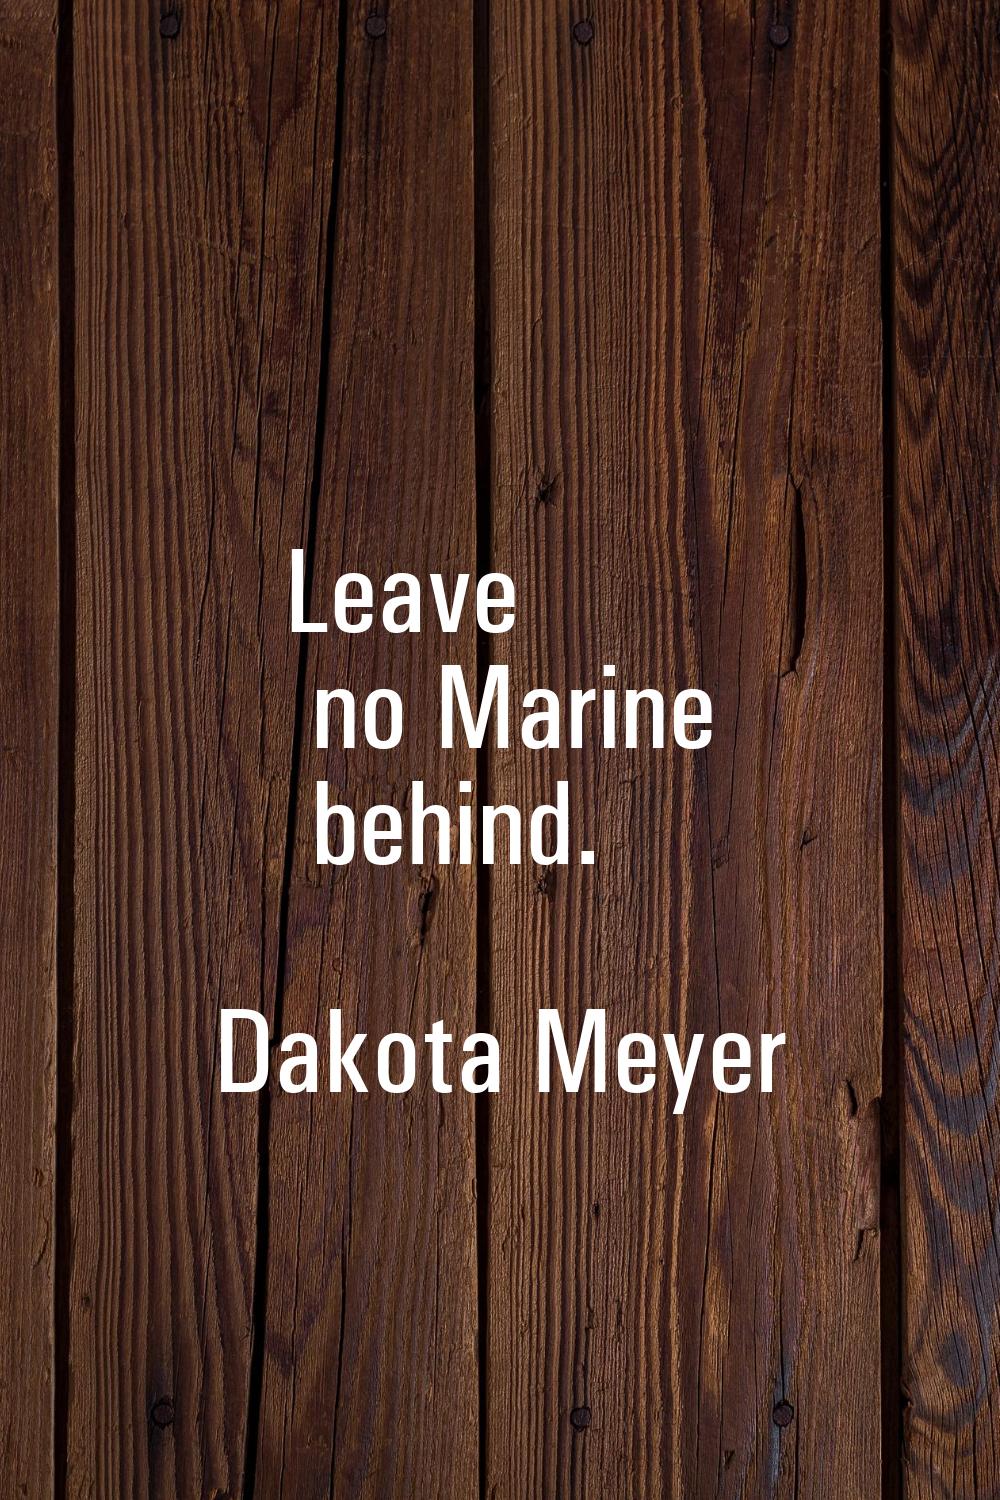 Leave no Marine behind.